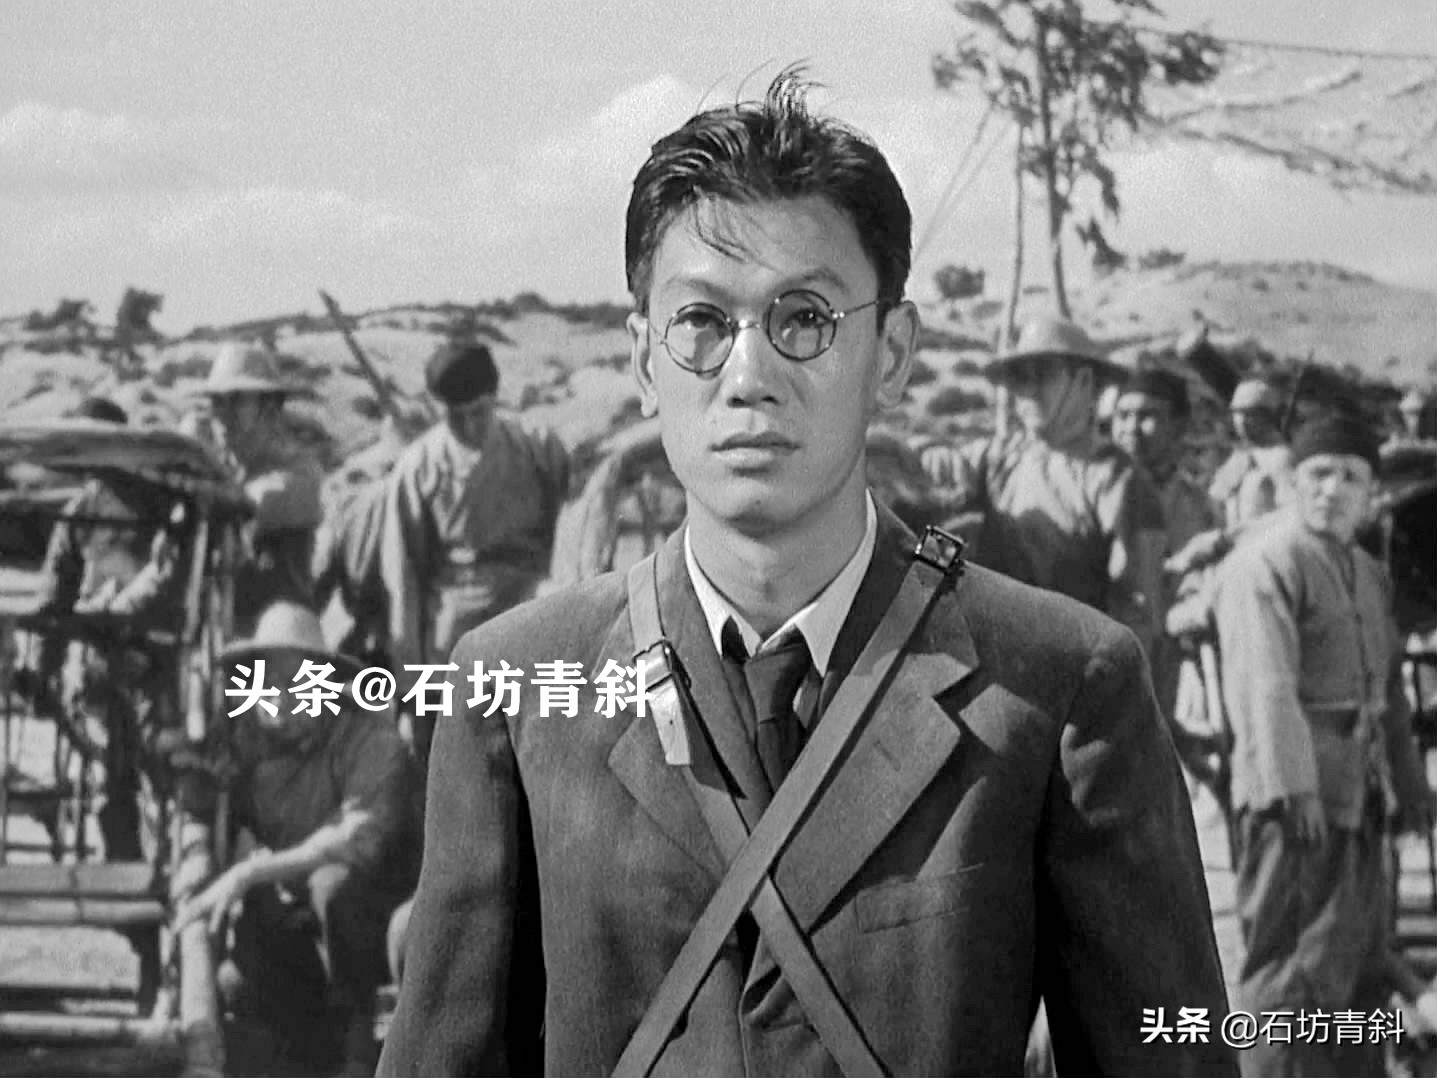 华裔演员邝炳雄常年跑龙套，不拍辱华电影，在好莱坞活出了尊严